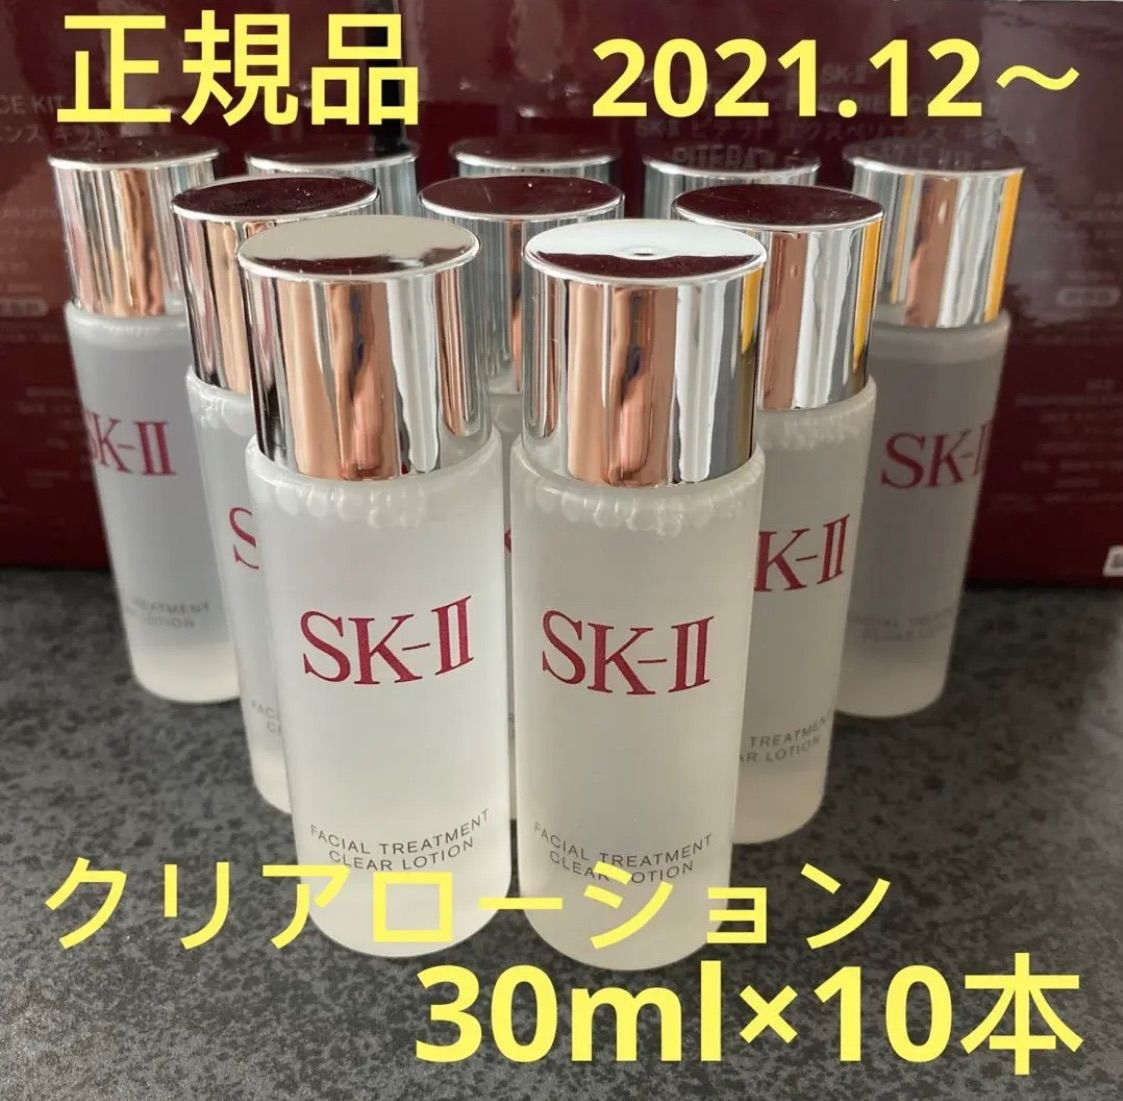 スキンケア/基礎化粧品SK-II フェイシャル トリートメント クリアローション 30mL ×10個